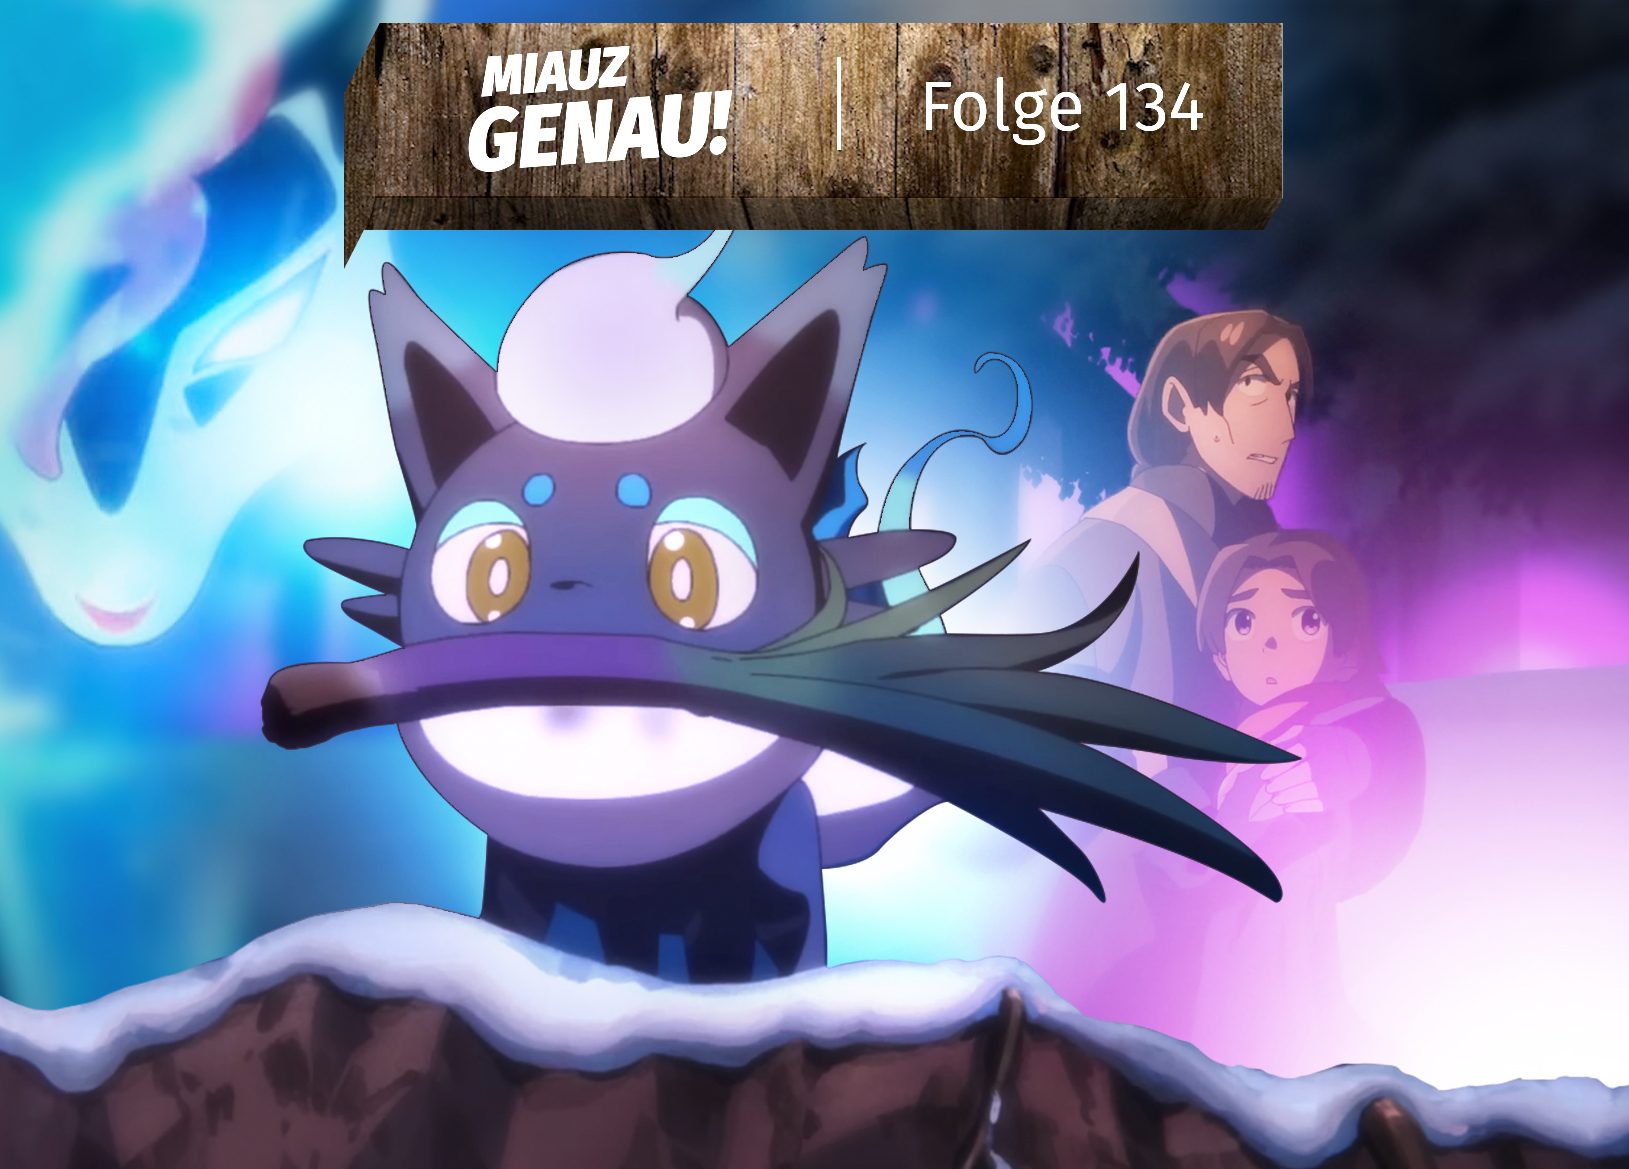 Szenen aus dem Anime Special "Schnee in Hisui". Shiny Zorua steht im Vordergrund mit einem Fitlauch. Im Hintergrund Alec und sein Vater. Links am Rand schwebt eine Zoroark Maske in blauer Energie. Oben ist ein Banner mit der Info, dass es Folge 134 vom deutschen Pokémon Podcast "Miauz Genau!" ist.